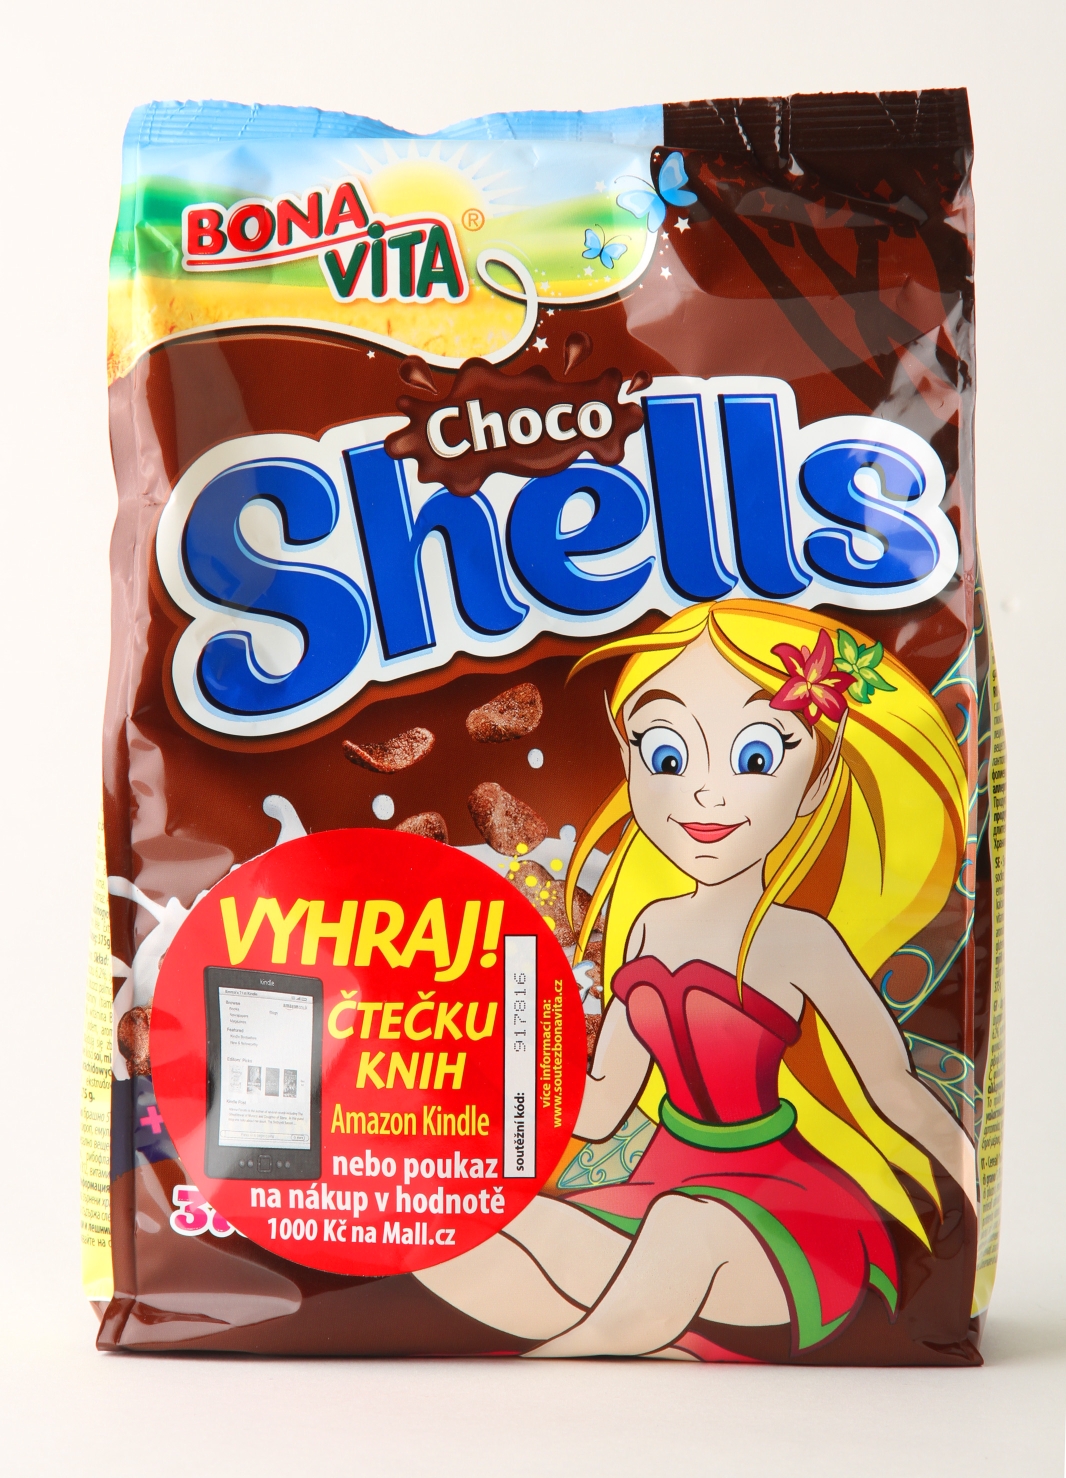 Bonavita Choco Shells